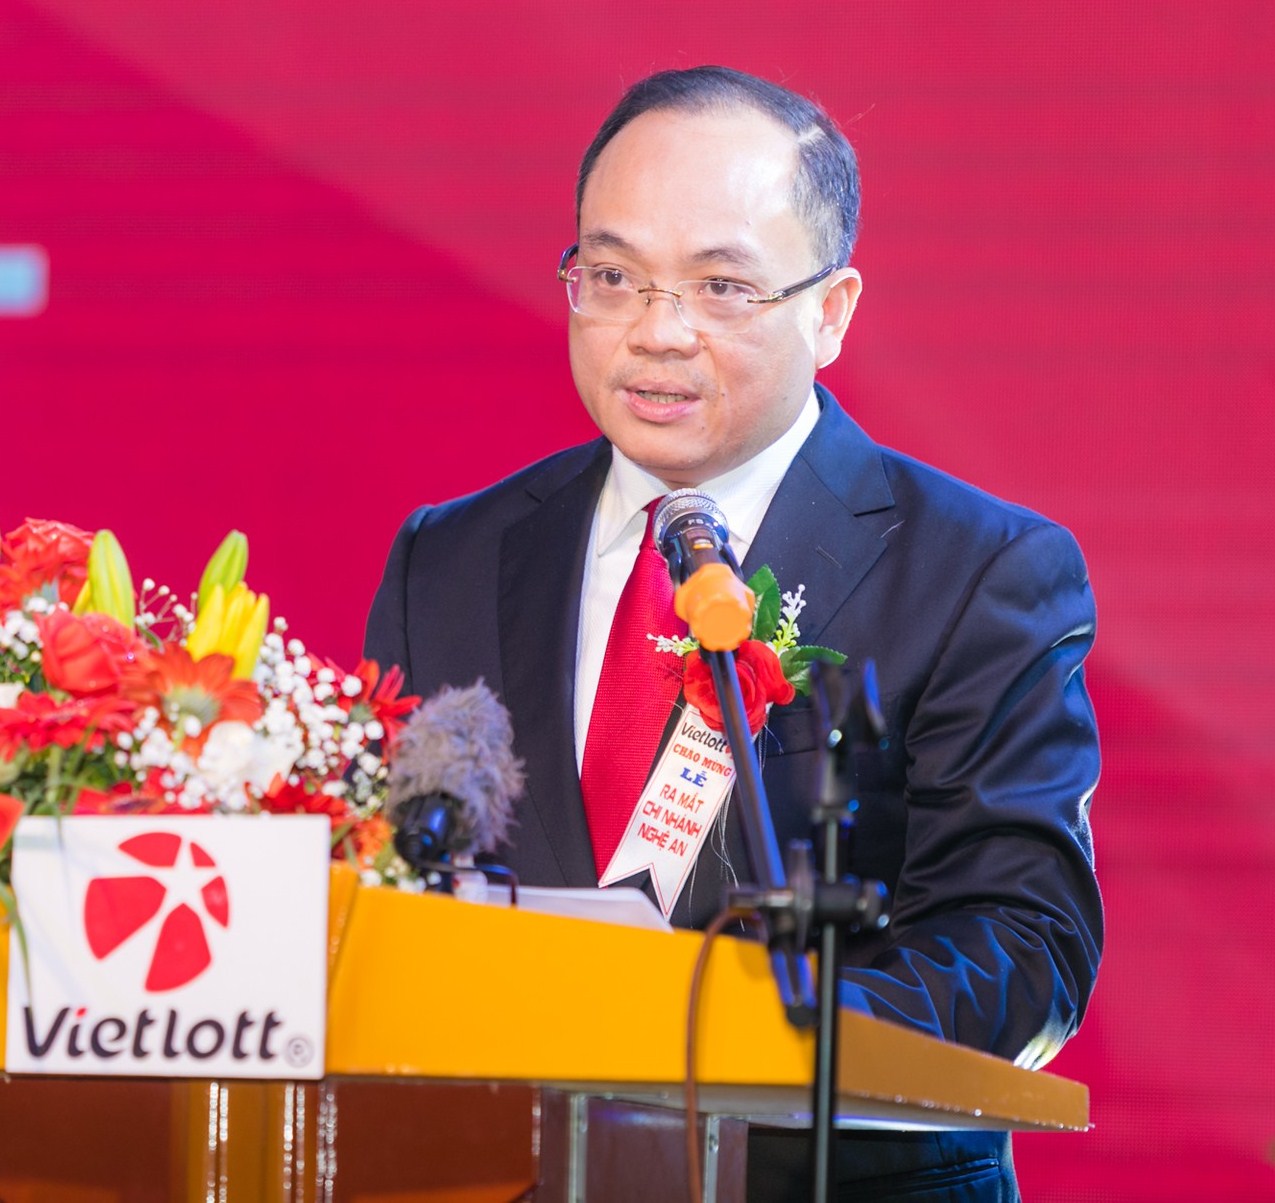 Chủ tịch Công ty Xổ số điện toán Việt Nam được Thủ tướng bổ nhiệm chức vụ mới - Ảnh 1.